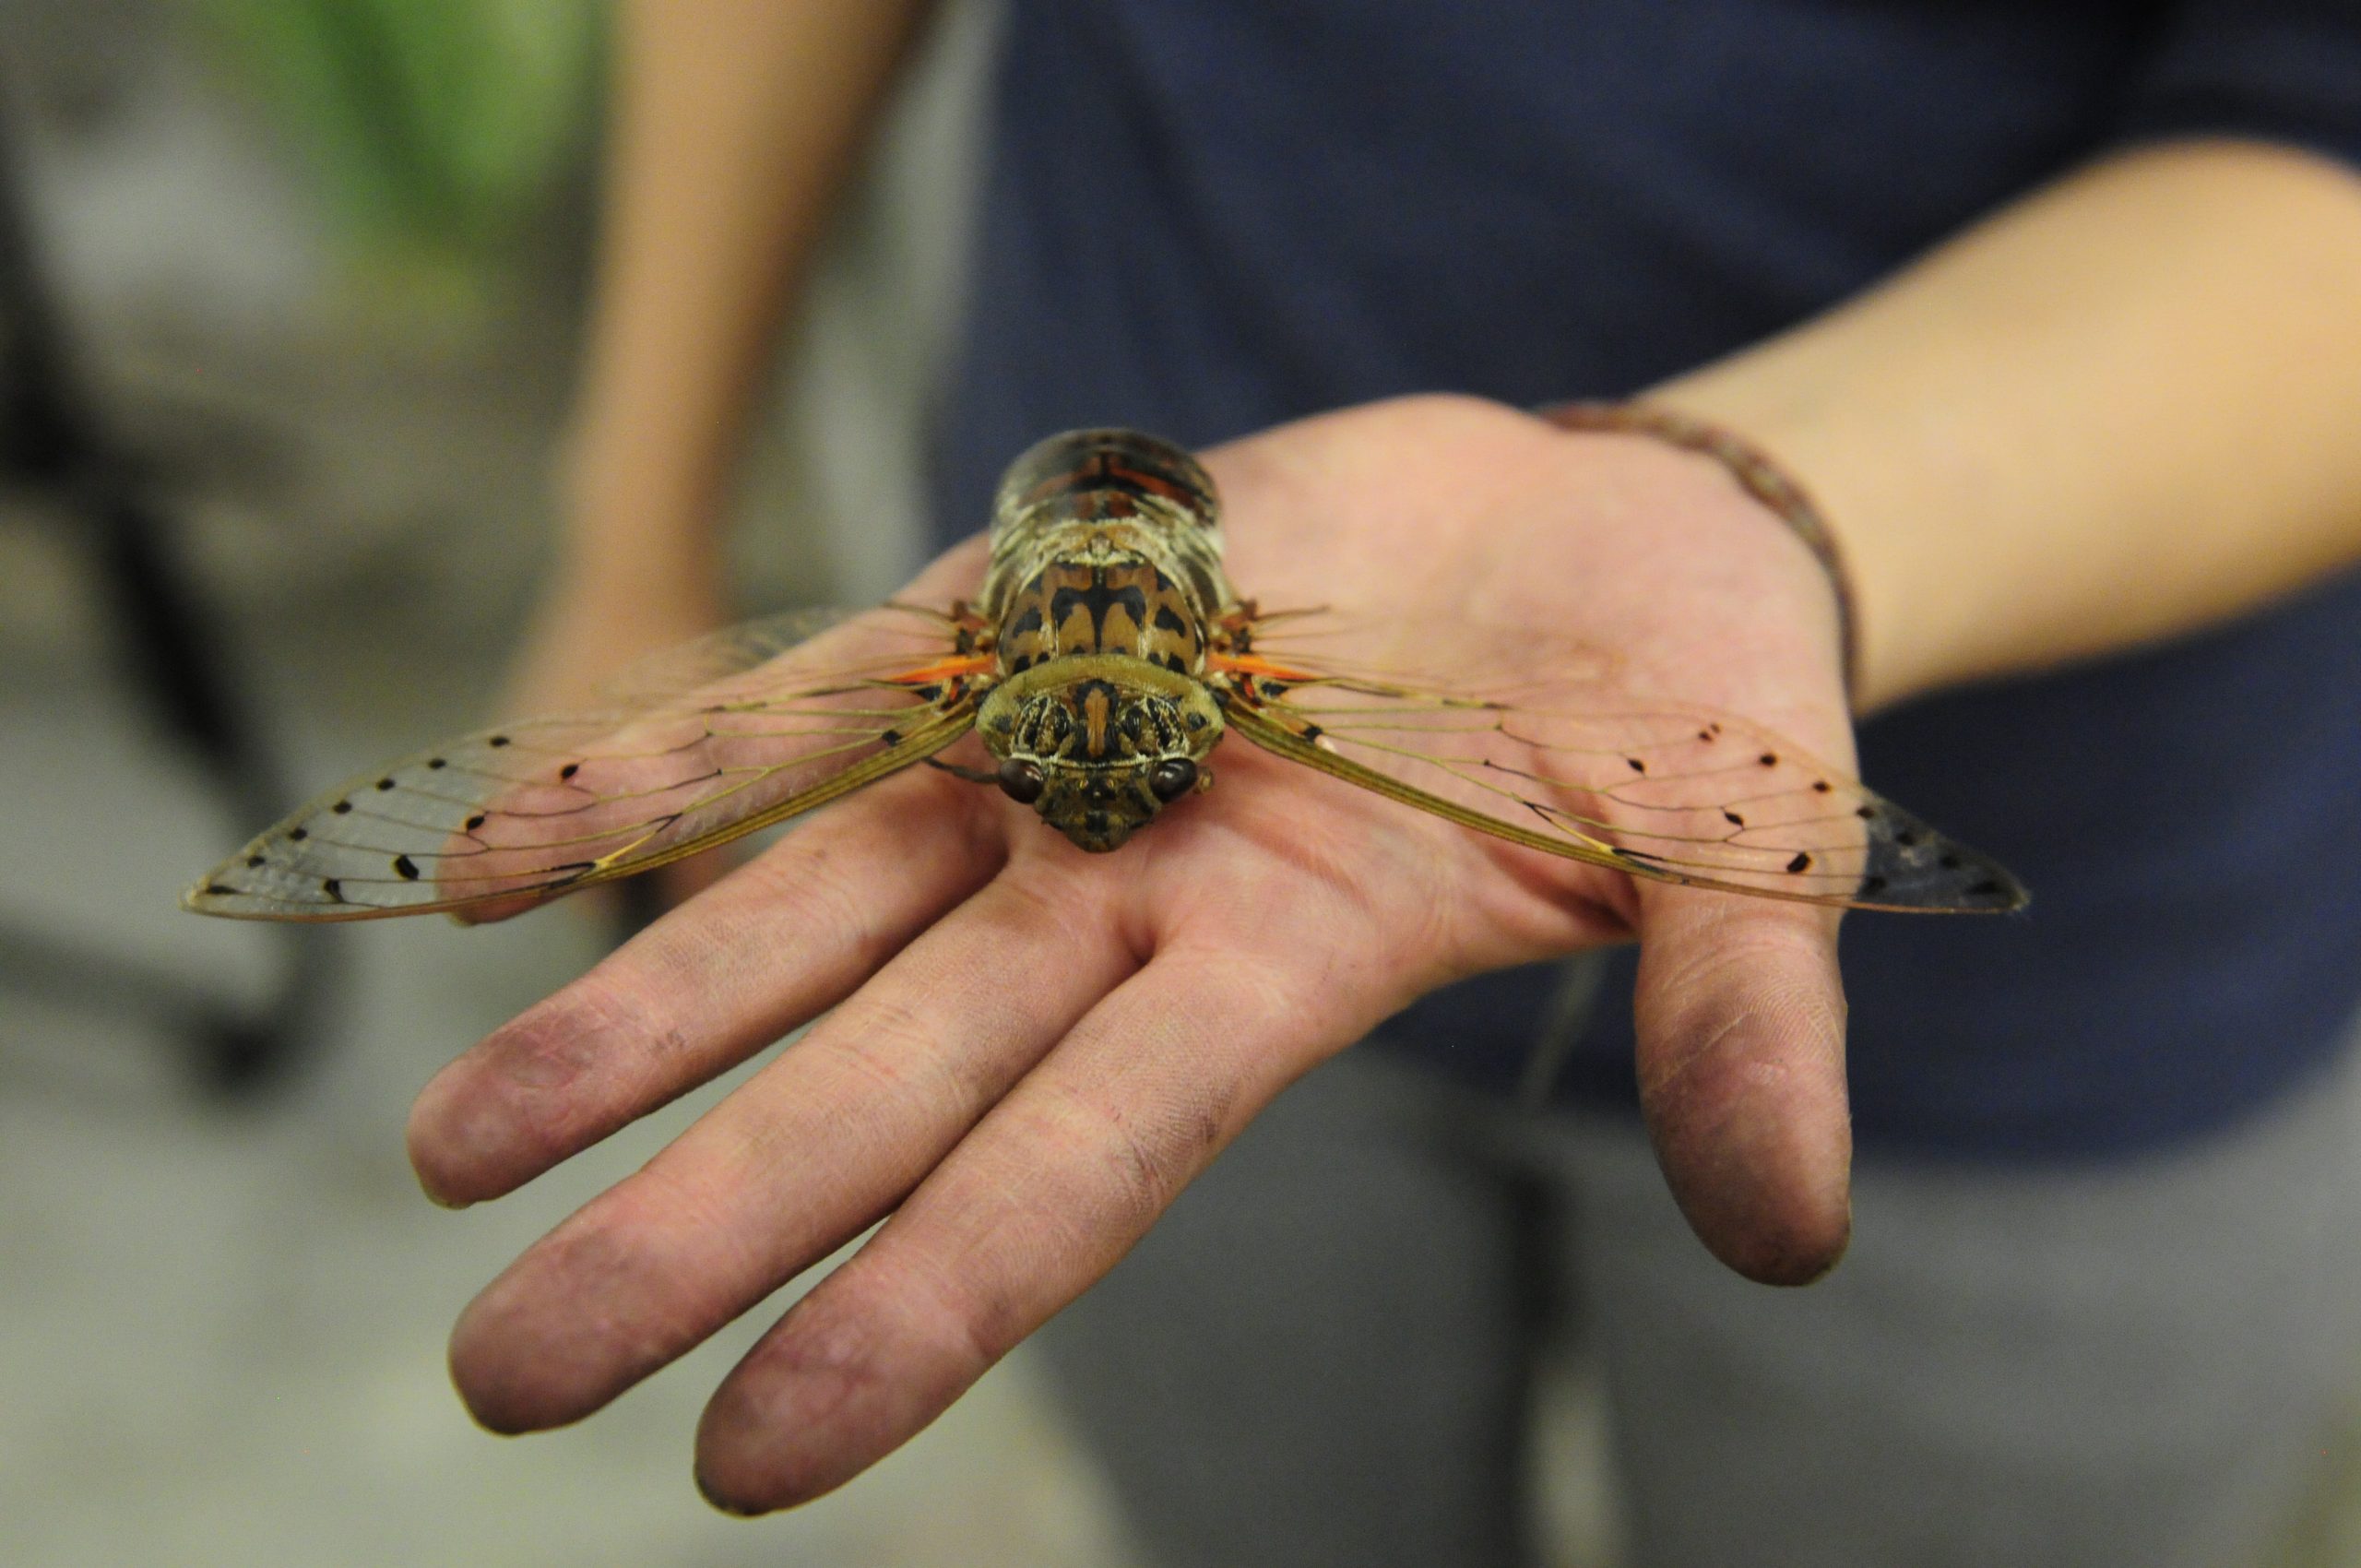 South Carolina Awaits the Cicadas Swarm: What to Expect